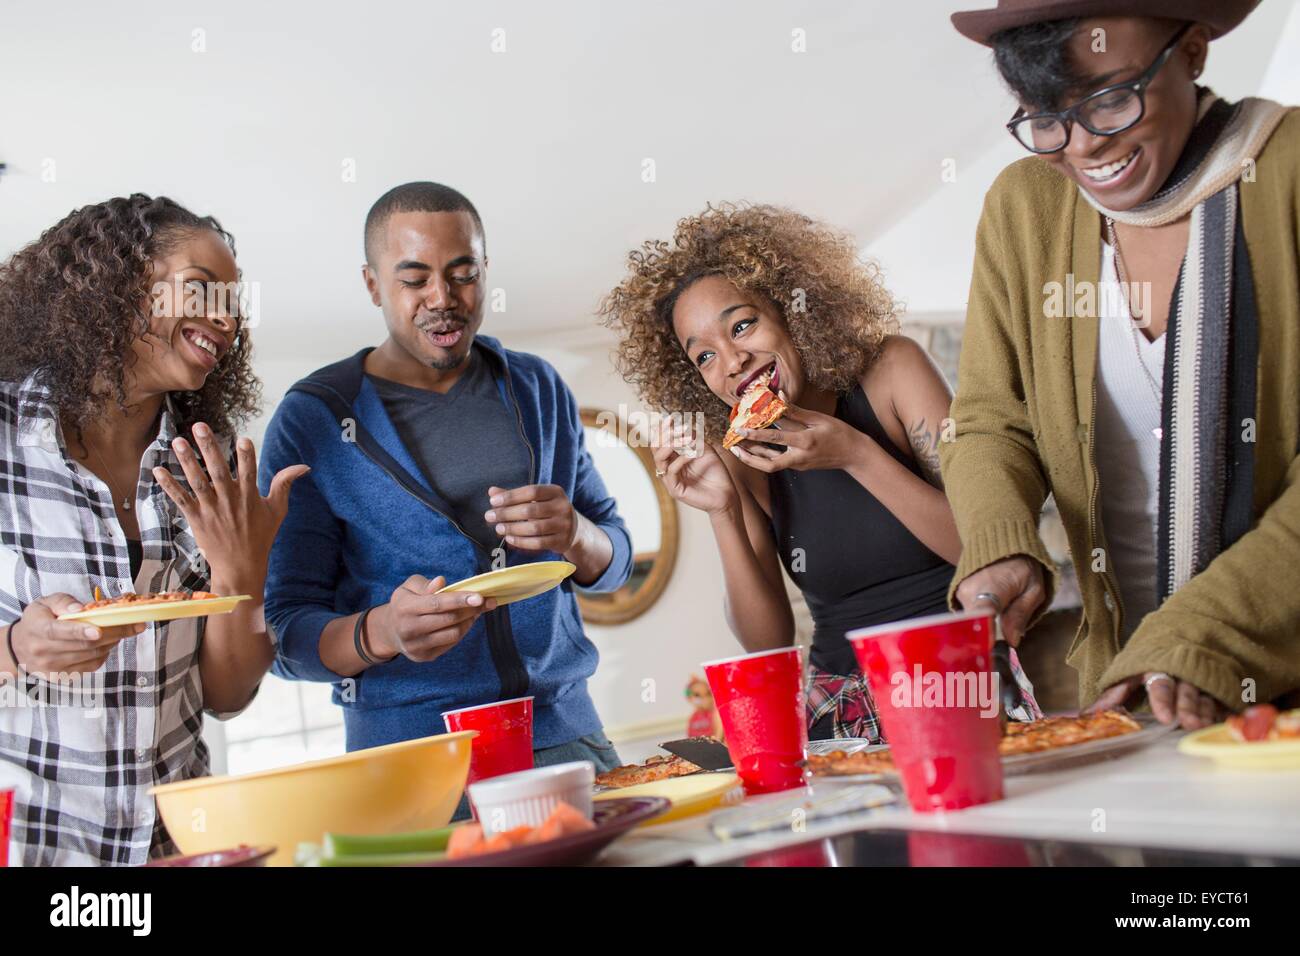 Quatre amis adultes chat et parti manger food in kitchen Banque D'Images